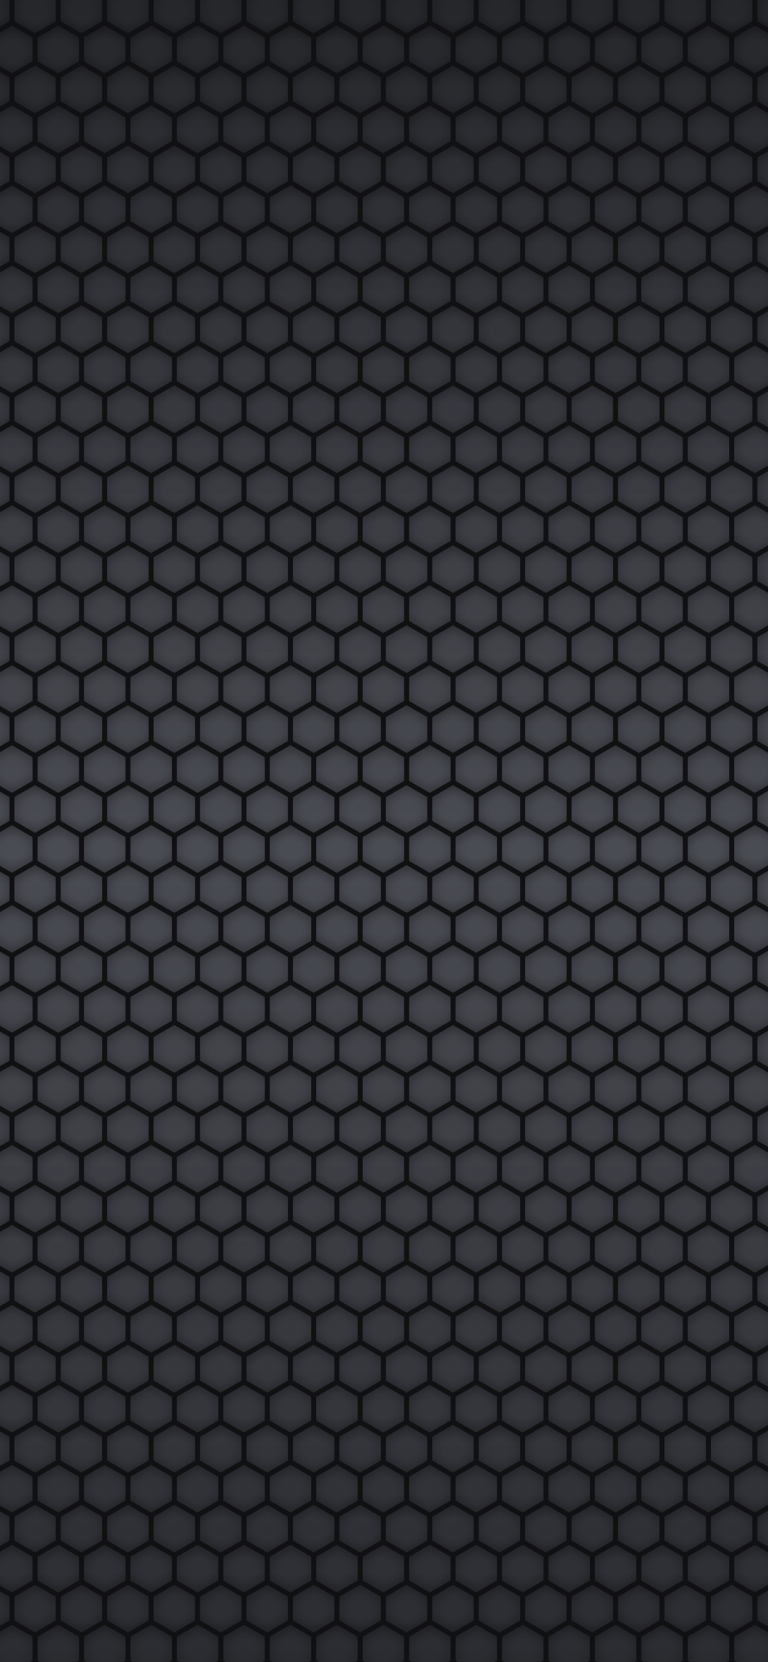 Swarm-dark-pattern-iphone-wallpaper-arthur-schrinemacher-768×1662